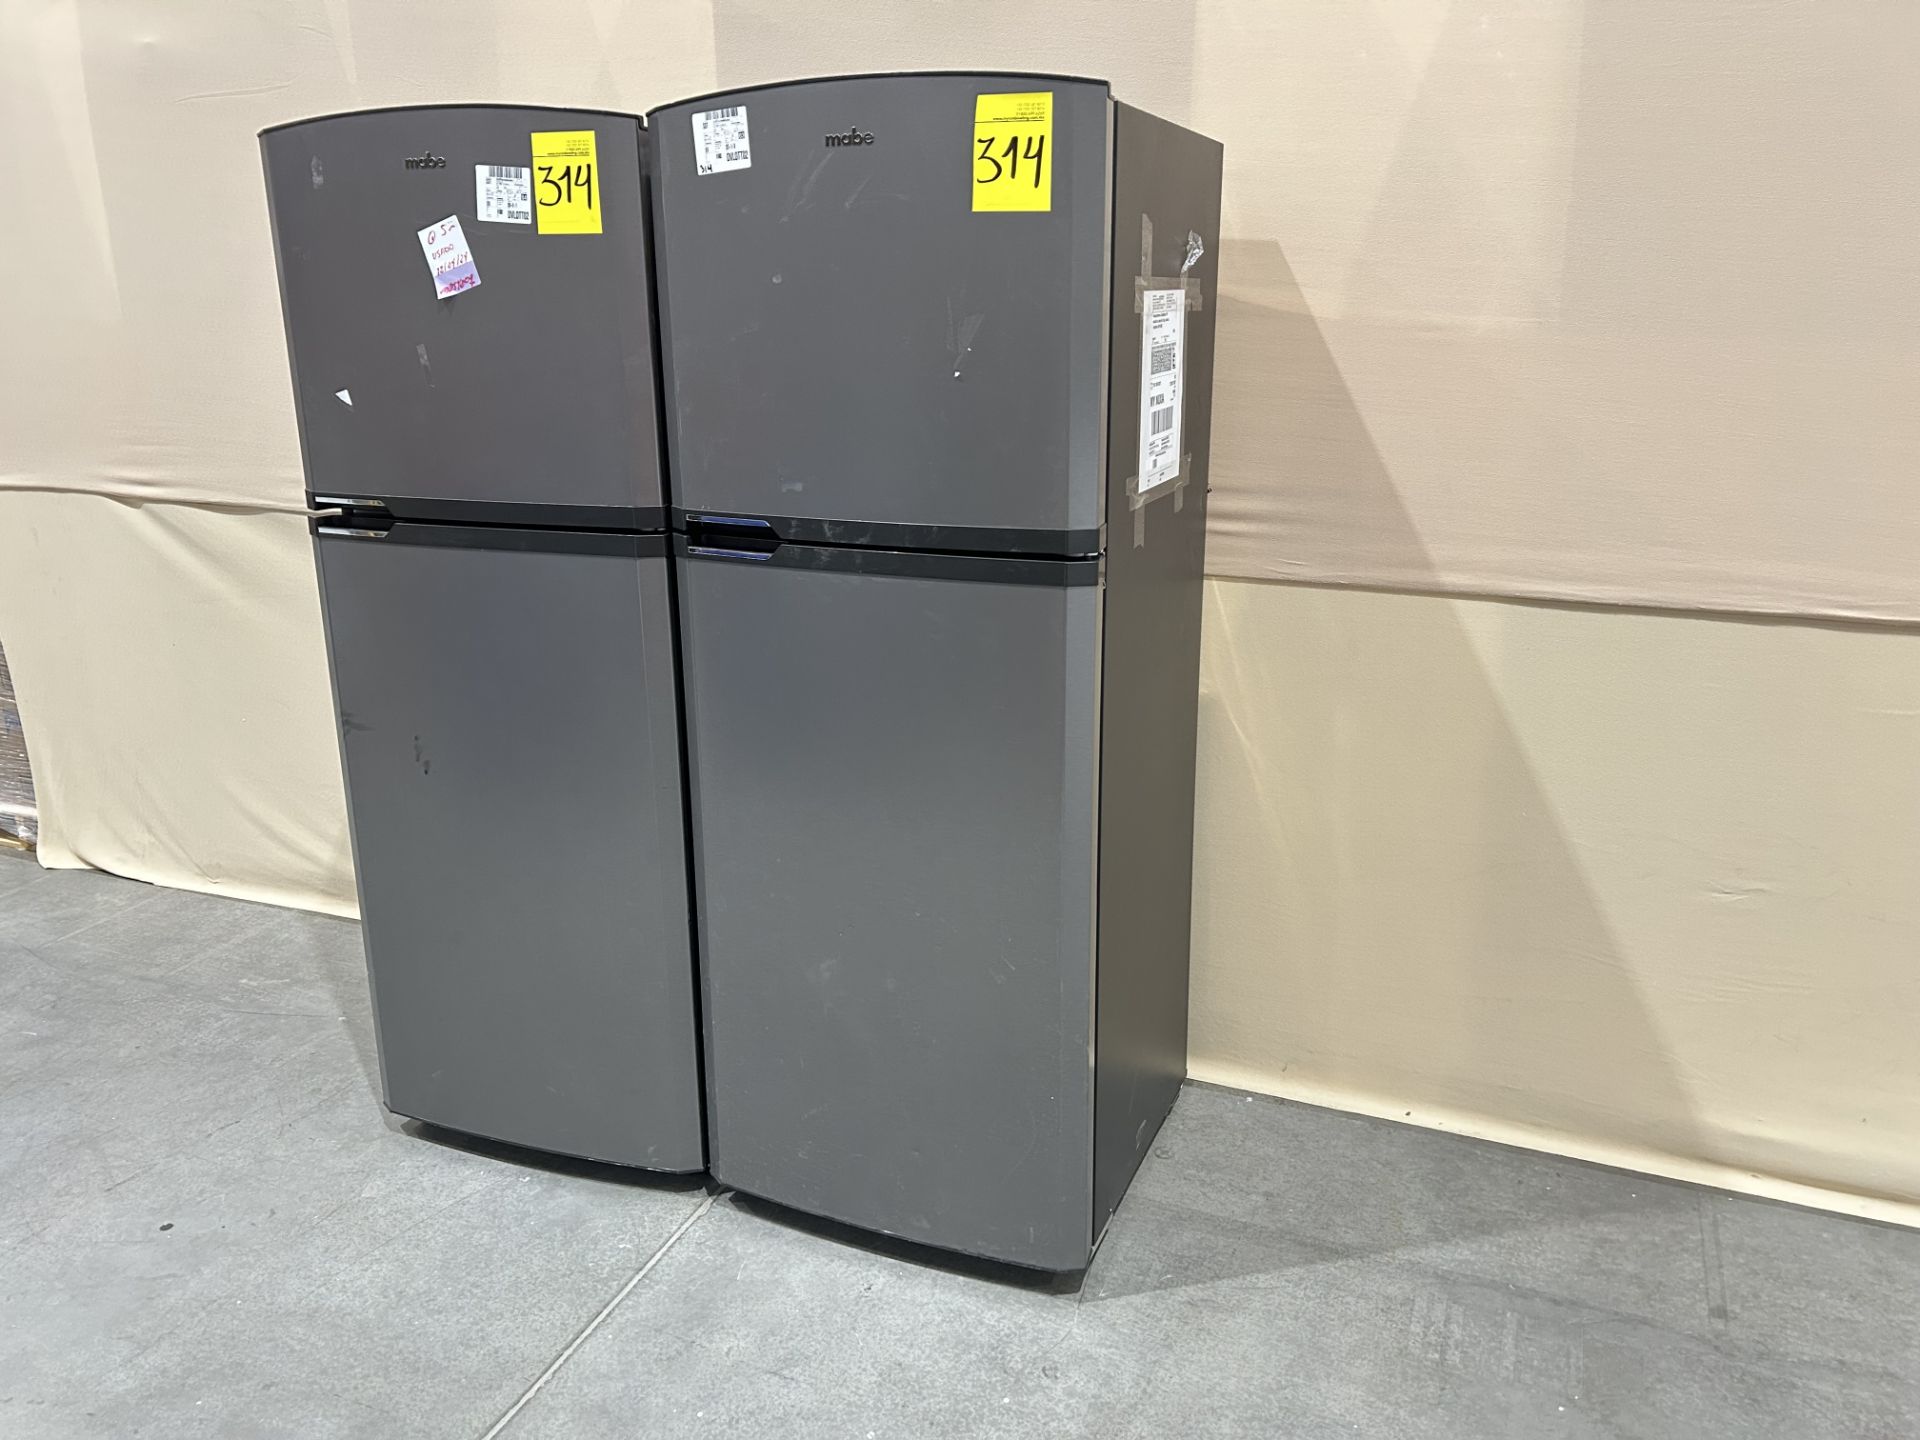 Lote de 2 refrigeradores contiene: 1 Refrigerador Marca MABE, Modelo RME360PVMRMA, Serie 822367, Co - Image 2 of 10